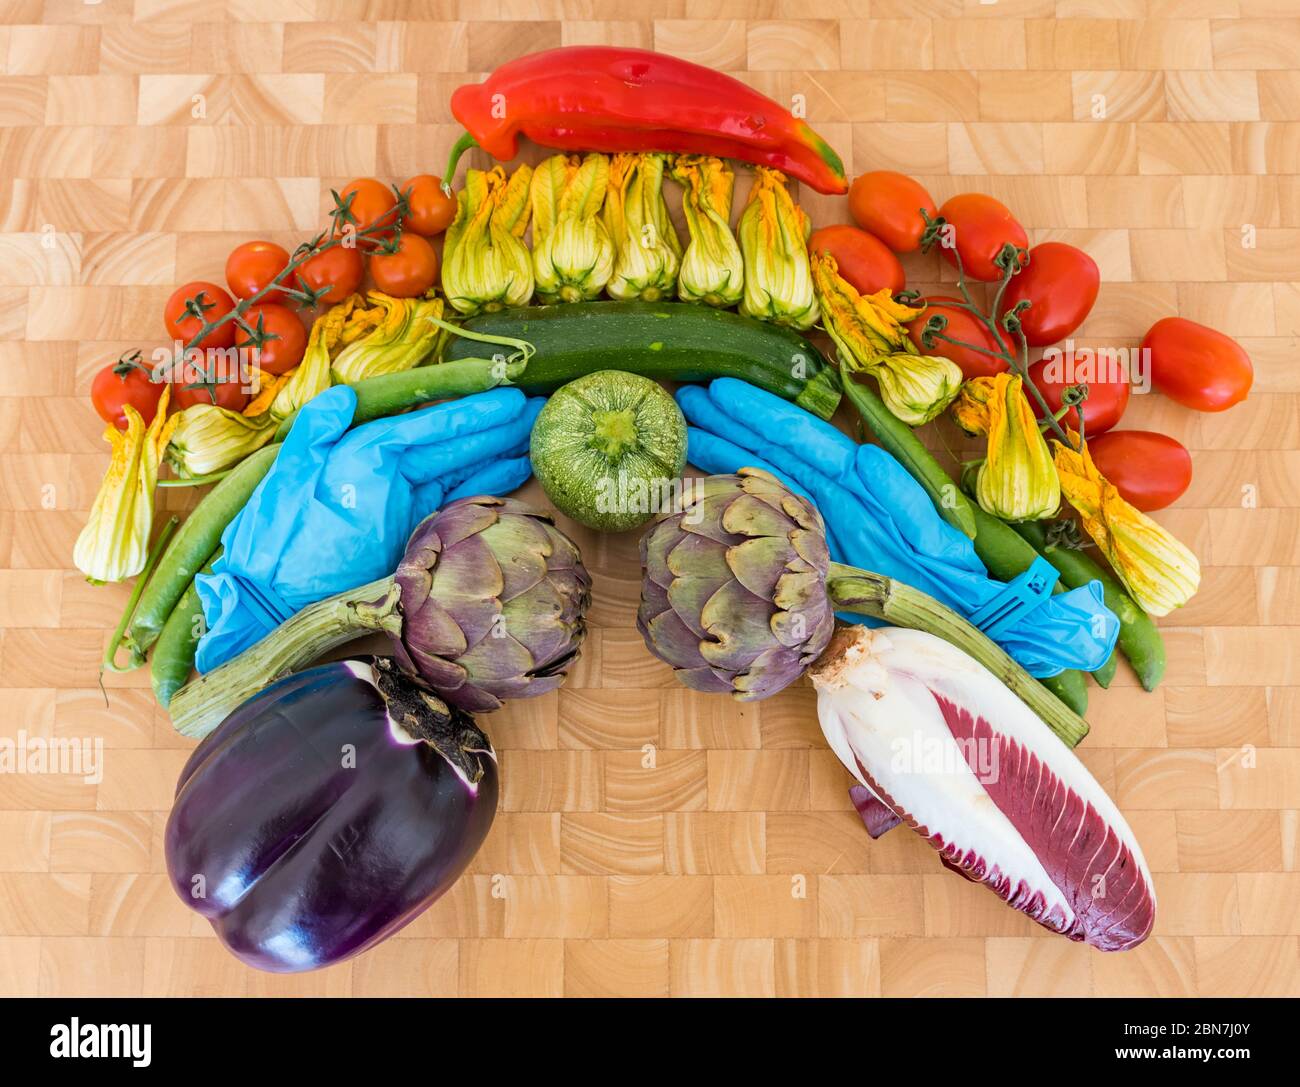 Arco iris de verduras símbolo de esperanza Covid-19 pandemia de Coronavirus: Tomates, flores de calabacín, guisantes, alcachofas, endivias, berenjena, guantes quirúrgicos Foto de stock